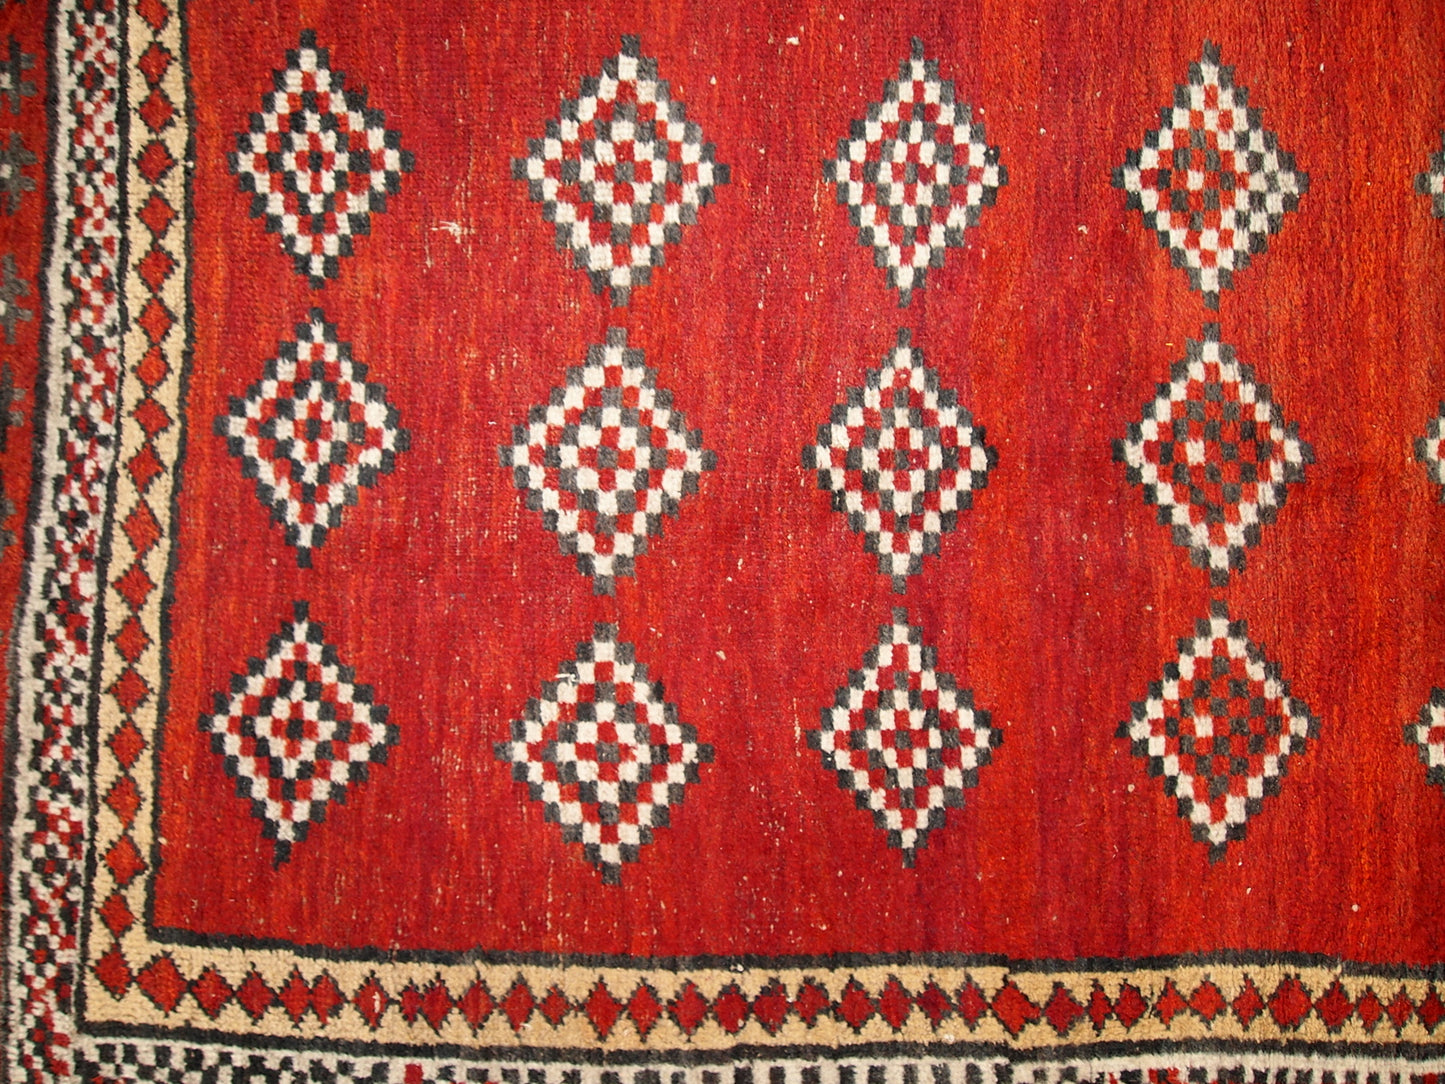 Hand made antique Uzbek Gulyam rug 3.4' x 5.5' (104cm x 170cm) 1920s - 1C278